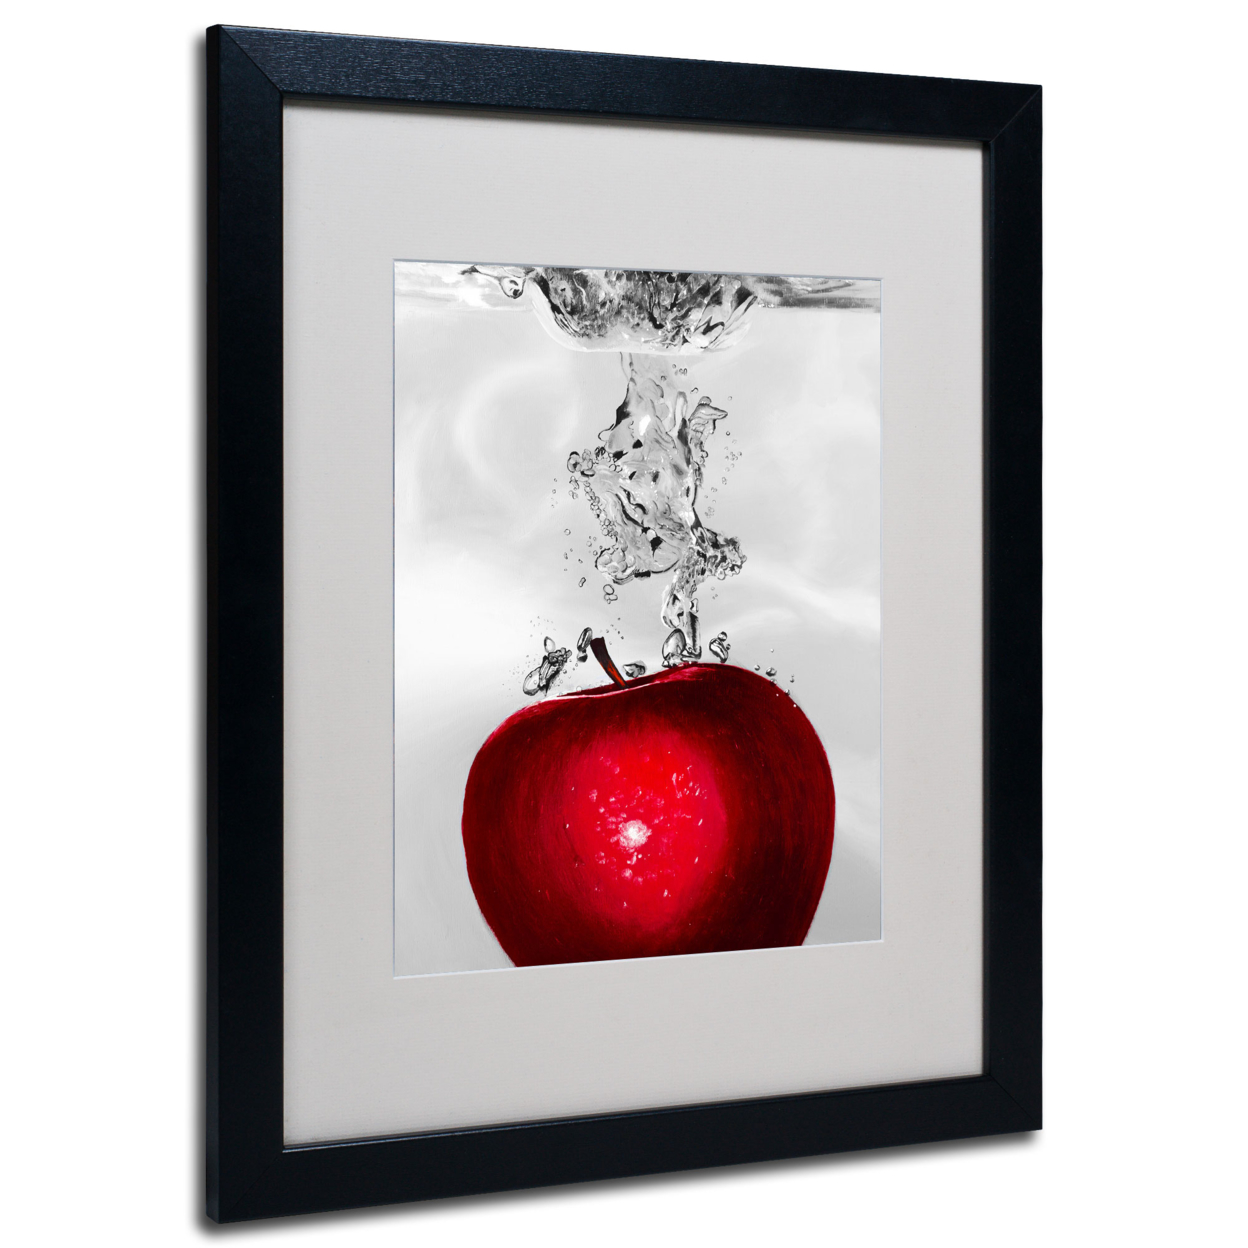 Roderick Stevens 'Red Apple Splash' Black Wooden Framed Art 18 X 22 Inches